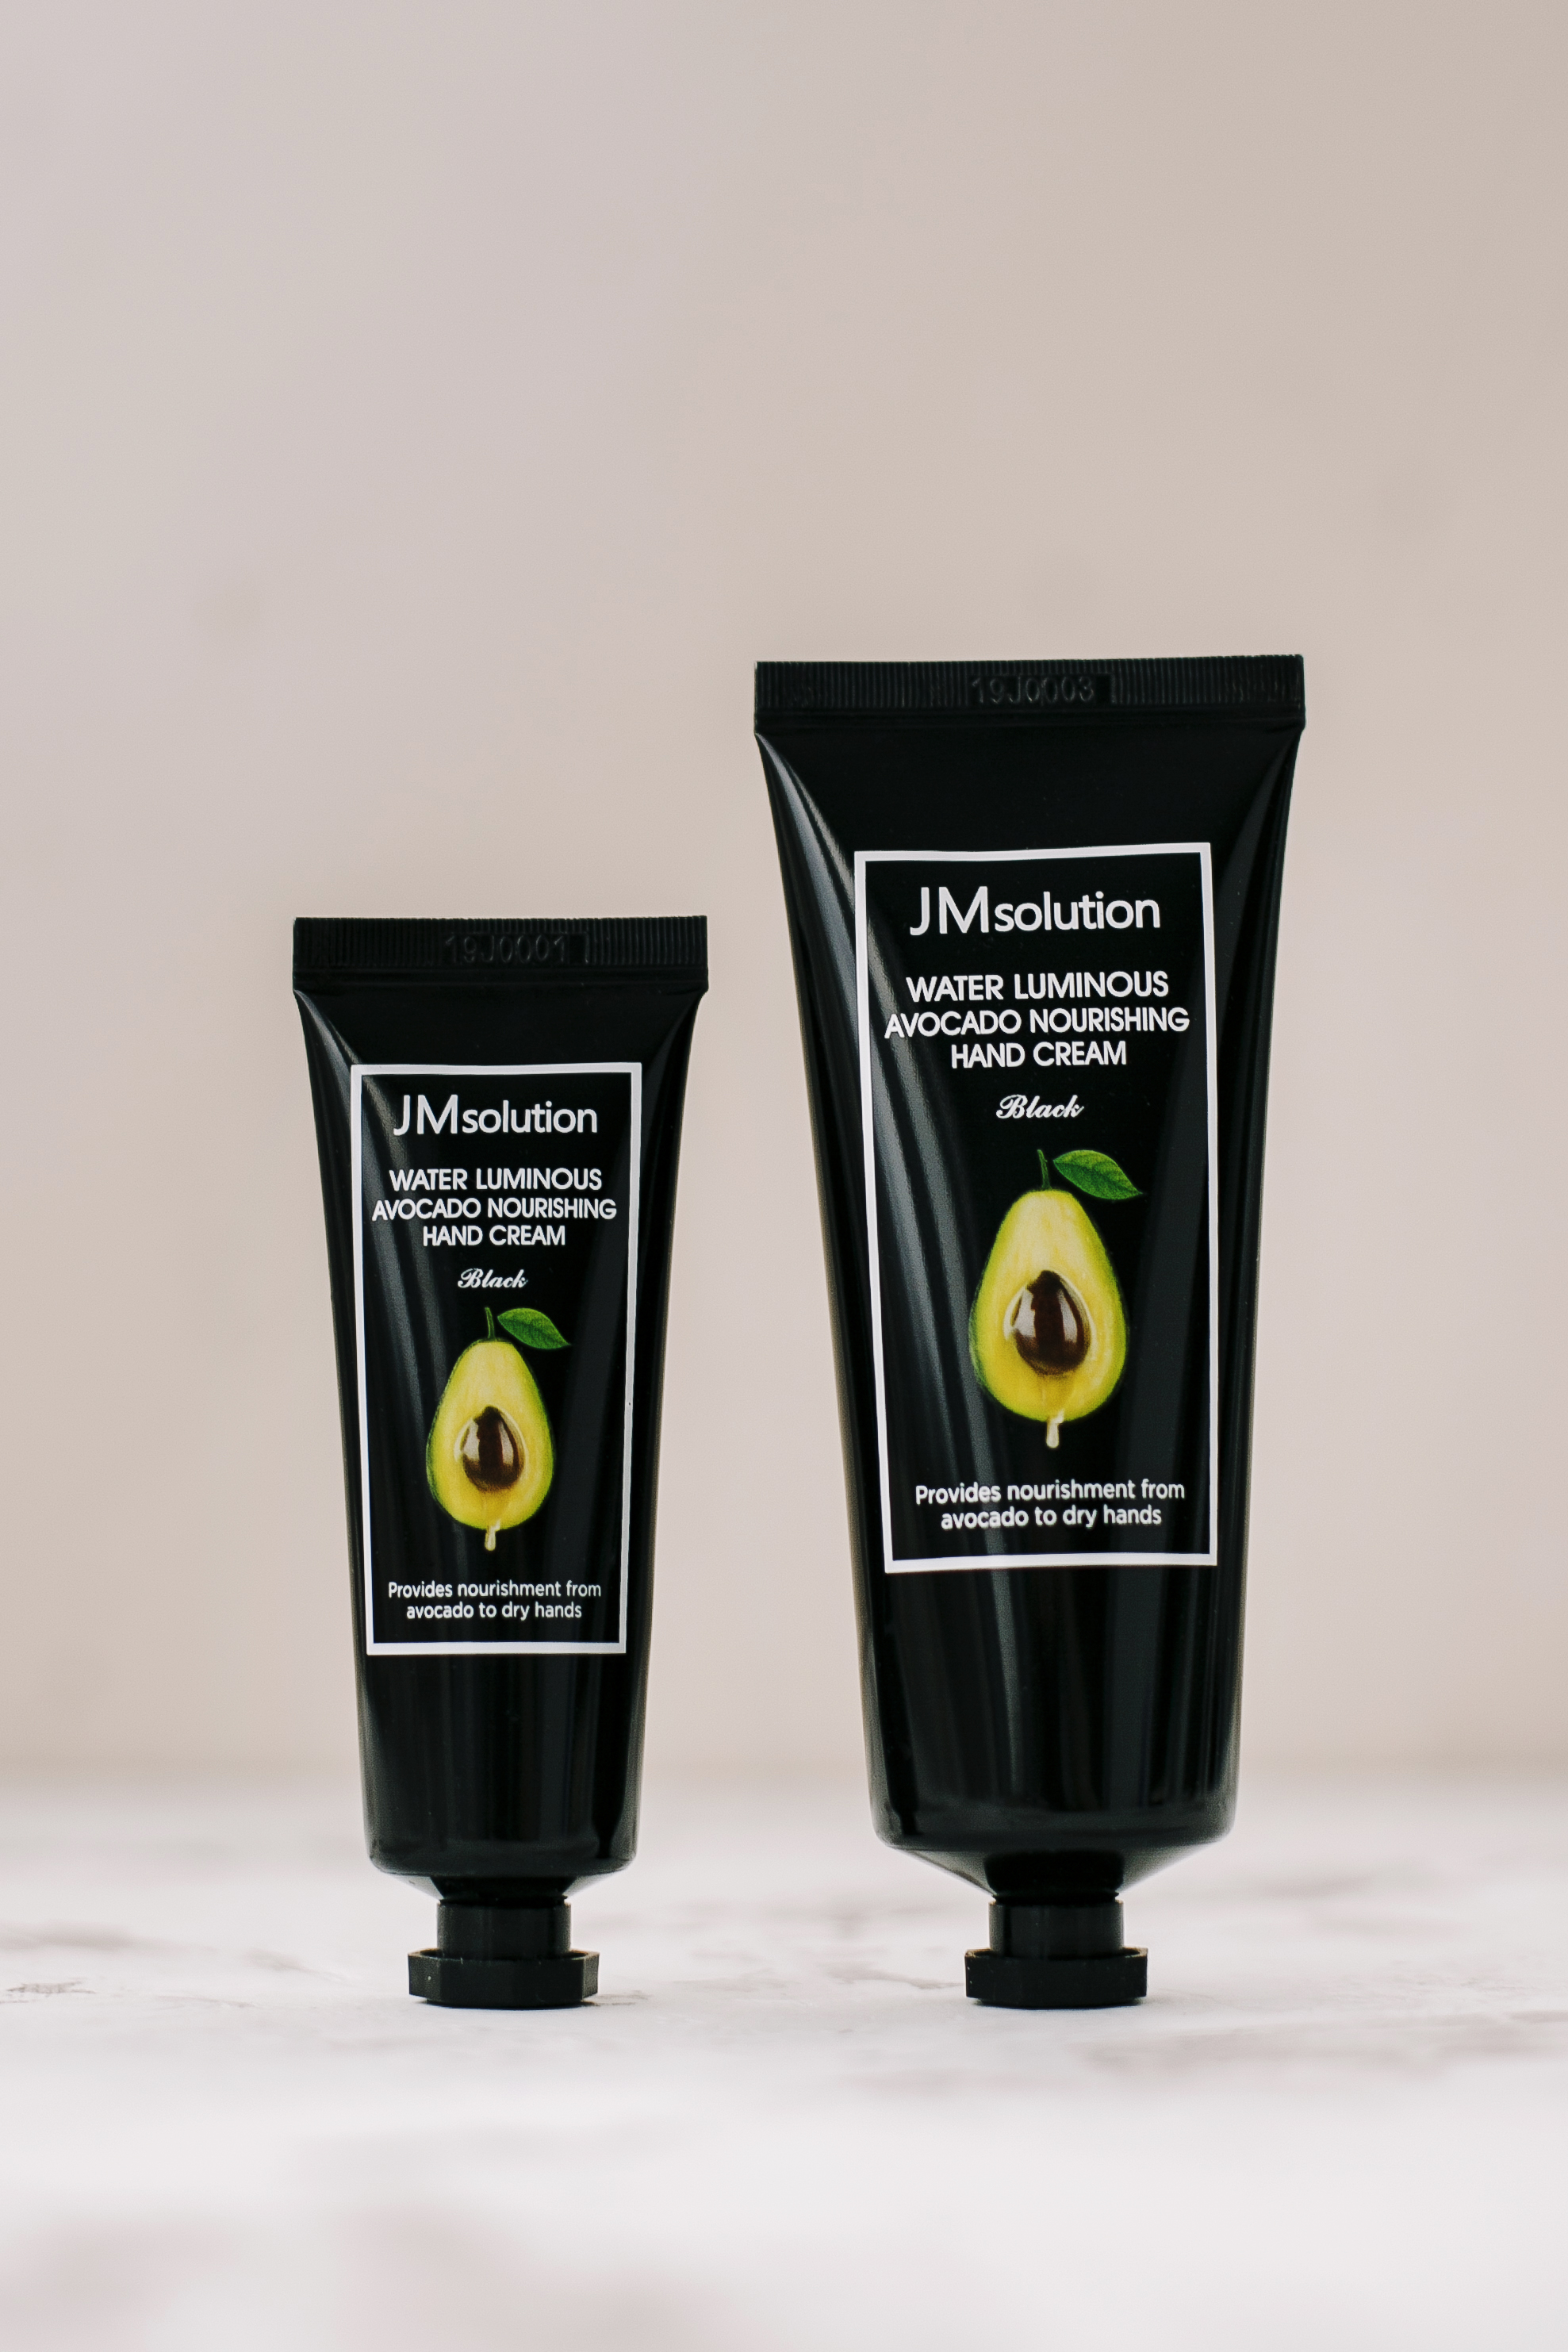 JM SOLUTION Water Luminous Avocado Nourishing Hand Cream 50ml+100ml